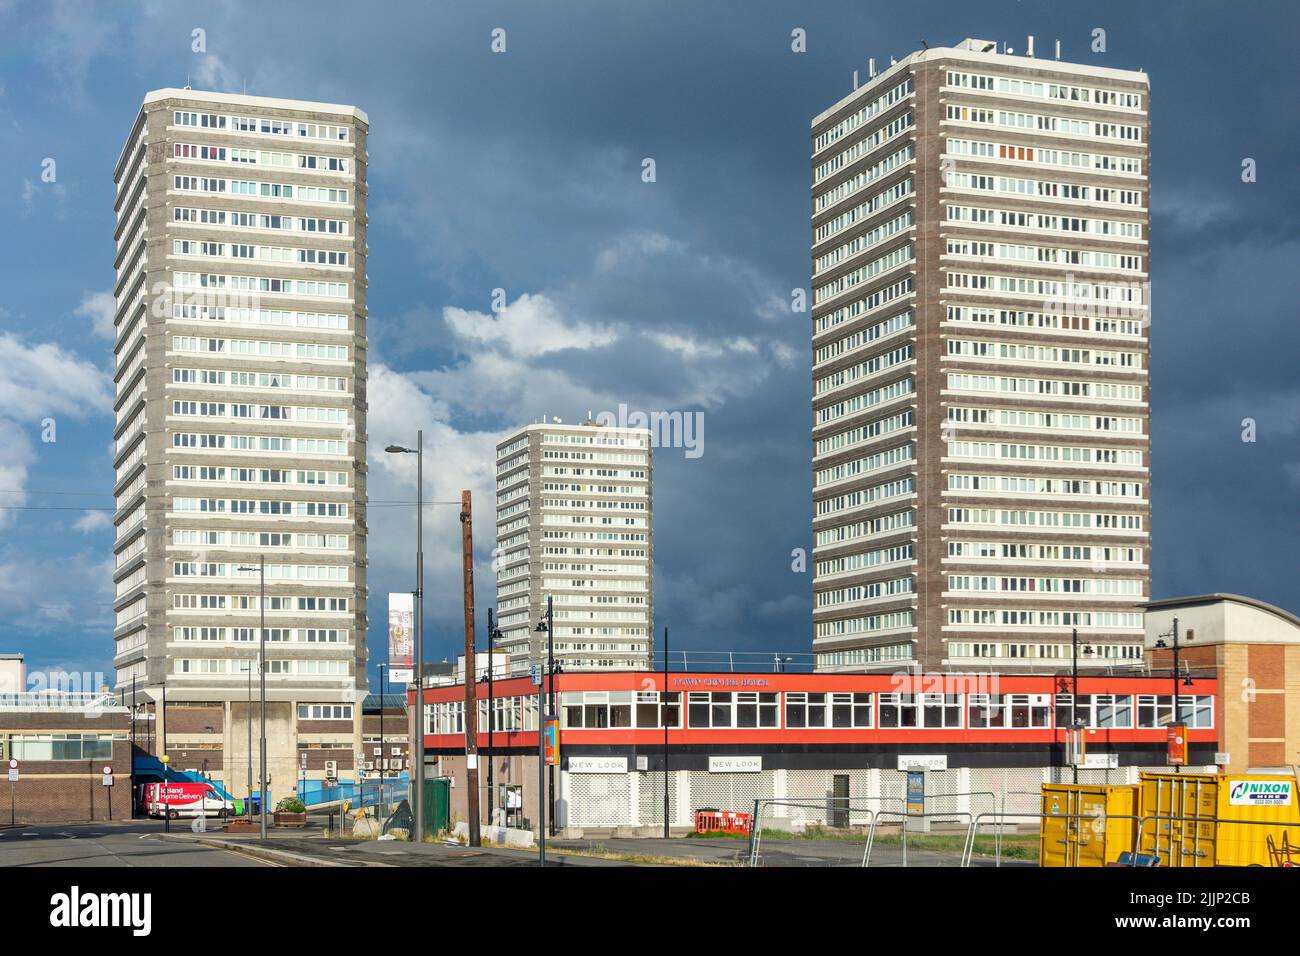 Solar-, Astral- und Planet Houses-Hochhäuser im Stadtzentrum, City of Sunderland, Tyne and Wear, England, Vereinigtes Königreich Stockfoto